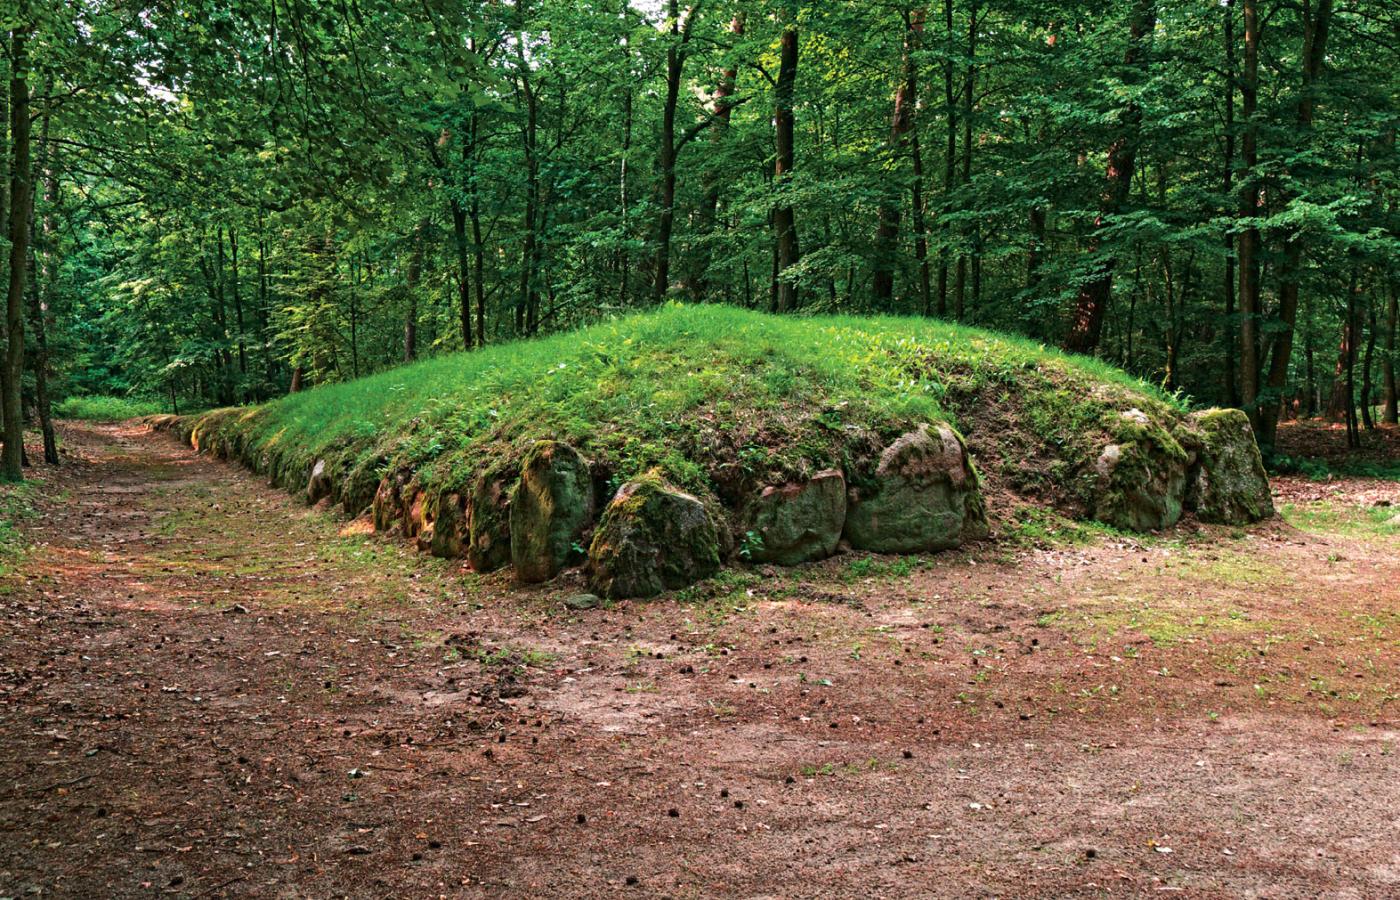 Jeden z lepiej zachowanych (widoczne resztki obstawy kamiennej) i częściowo zrekonstruowanych grobowców megalitycznych w Wietrzychowicach koło Izbicy Kujawskiej. W pobliżu wsi Góry jest kilkanaście podobnych gigantów, które dziś całkowicie przykrywa las.